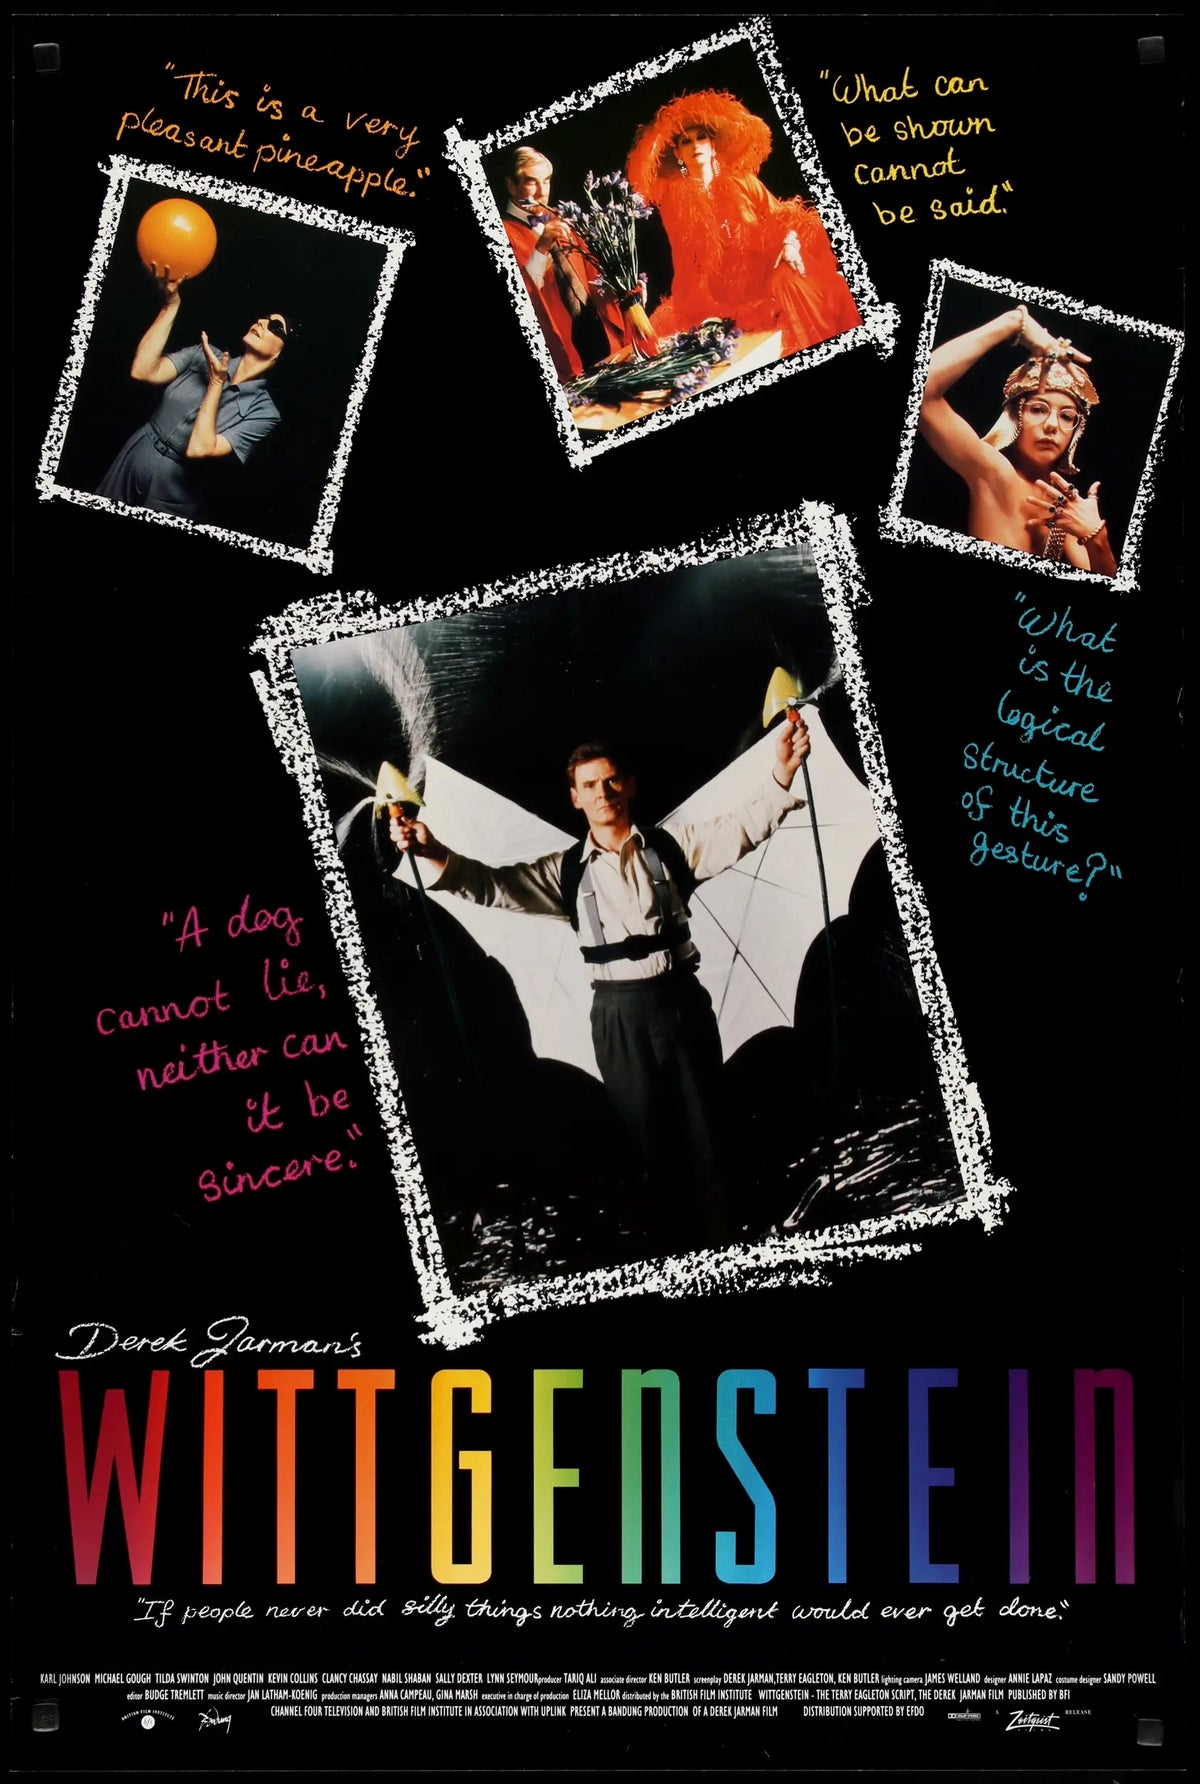 Wittgenstein (1993) original movie poster for sale at Original Film Art